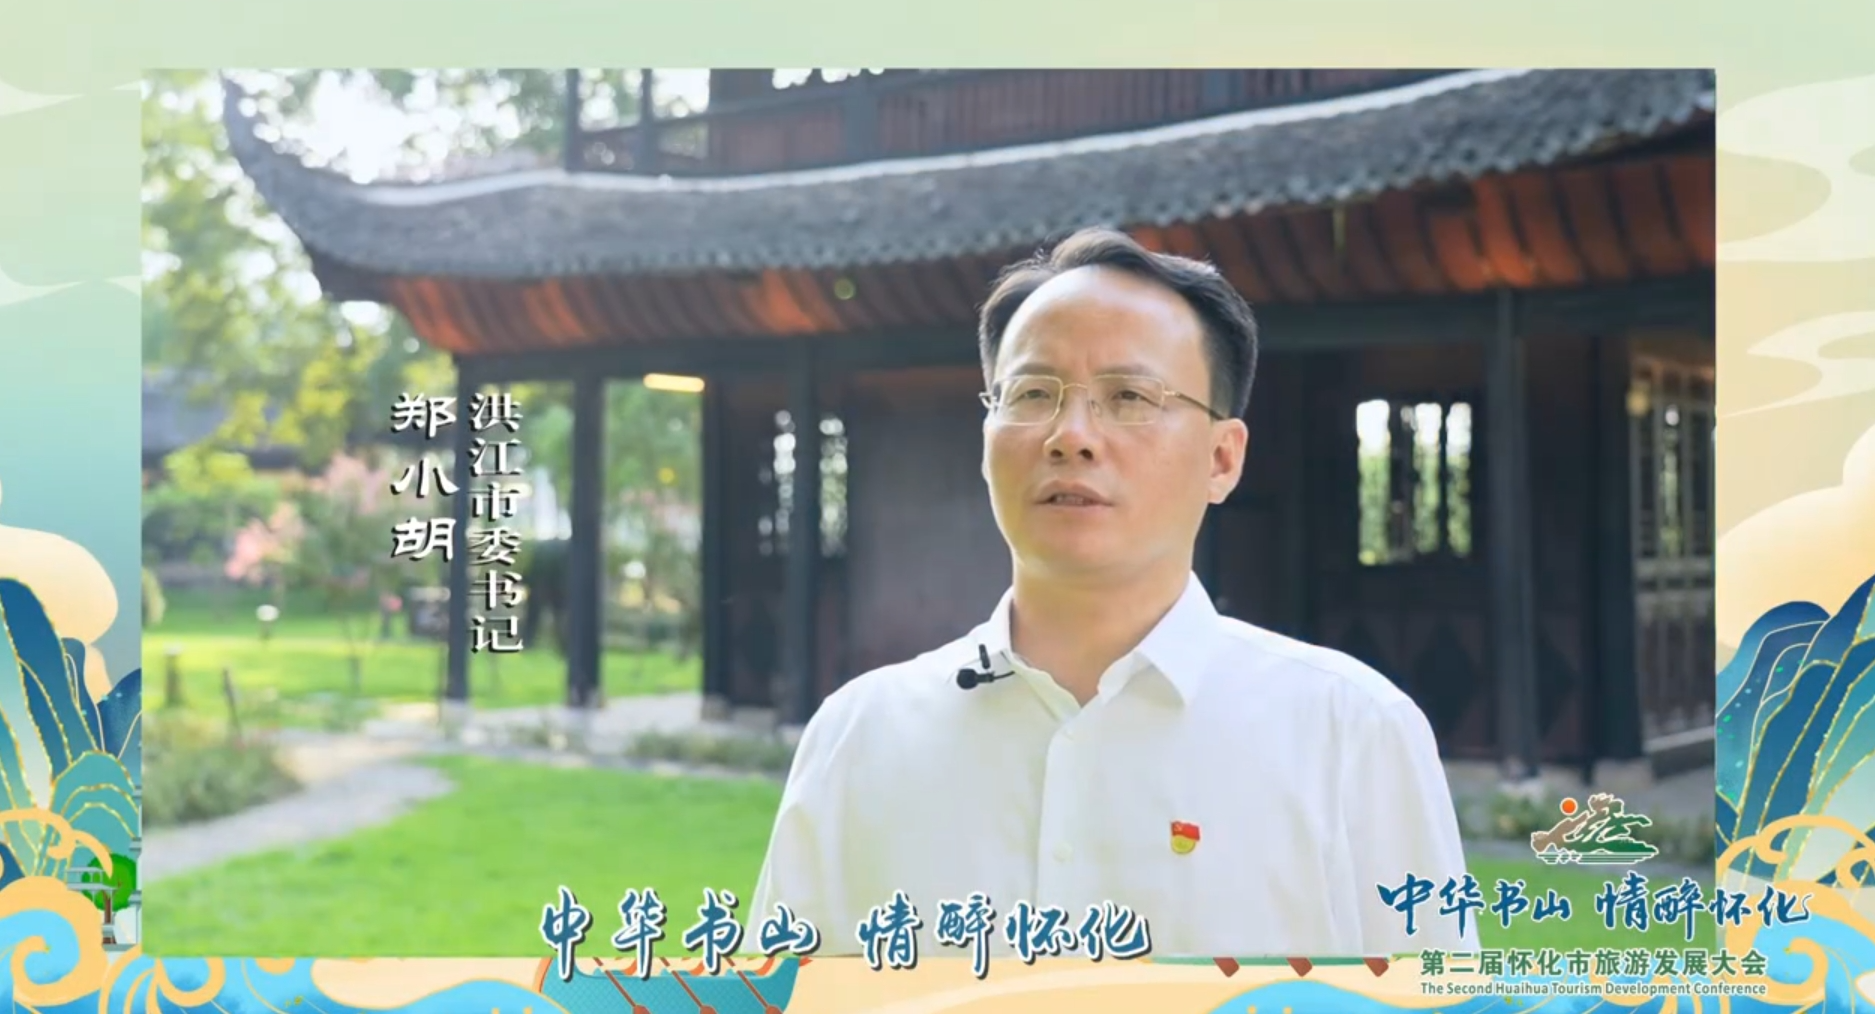 【微視頻】為第二屆懷化市旅游發展大會點贊 · 洪江市篇